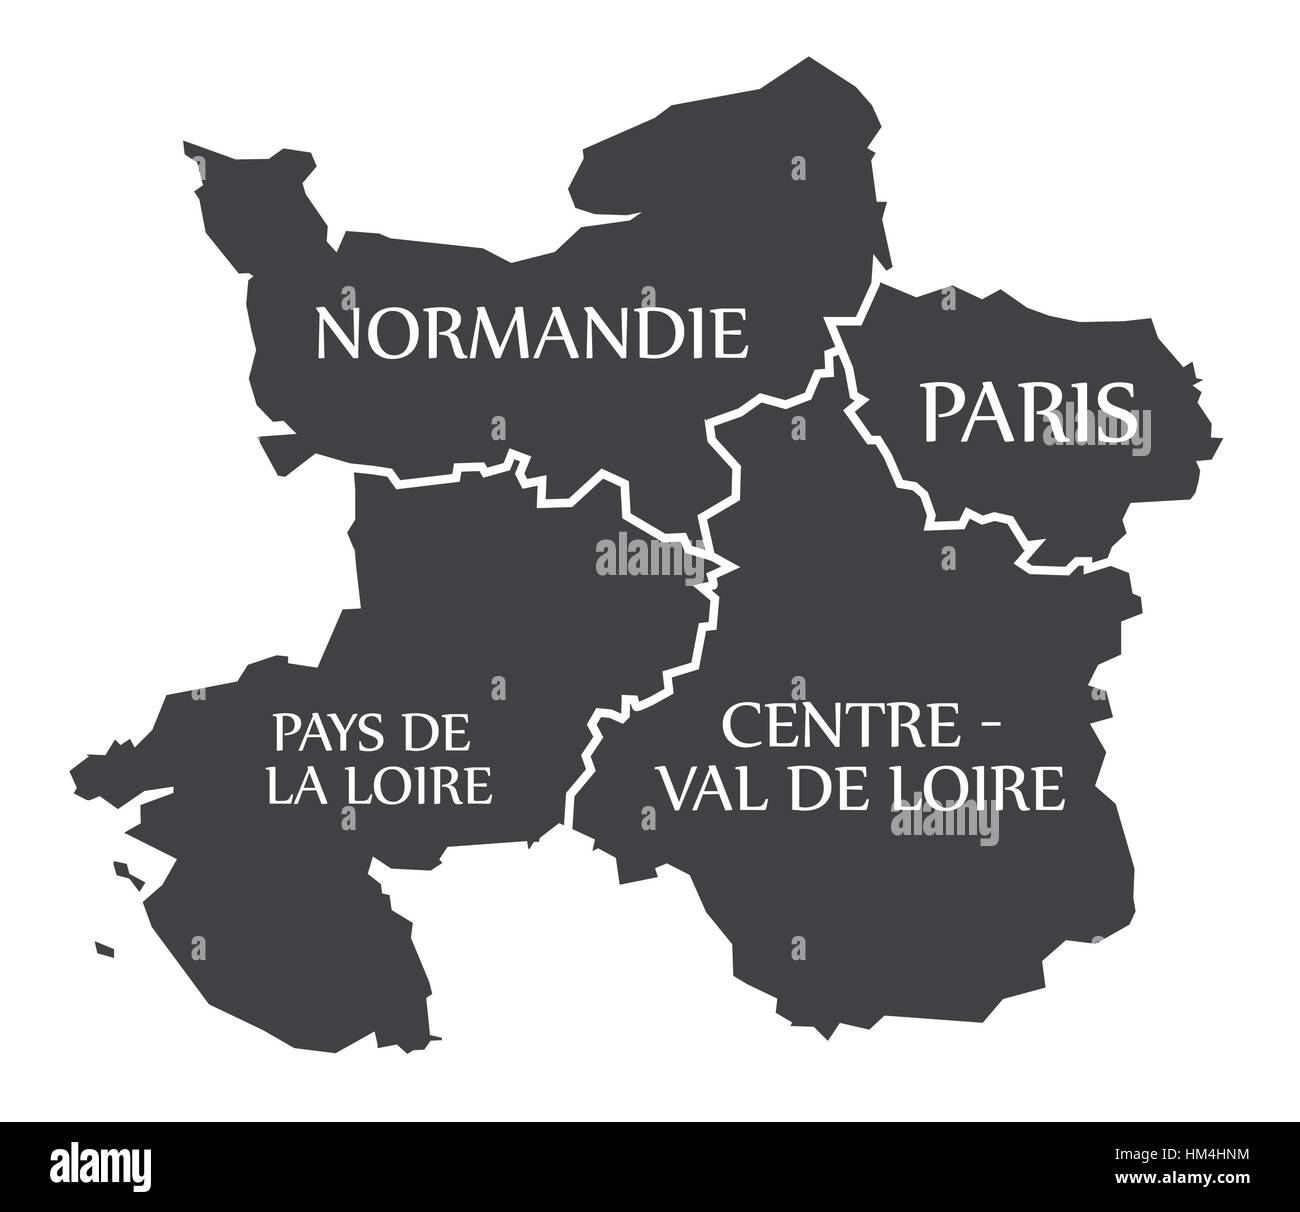 Normandie - Paris - Region Pays De La Loire - Centre - Val de Loire Karte Frankreich Abbildung Stock Vektor